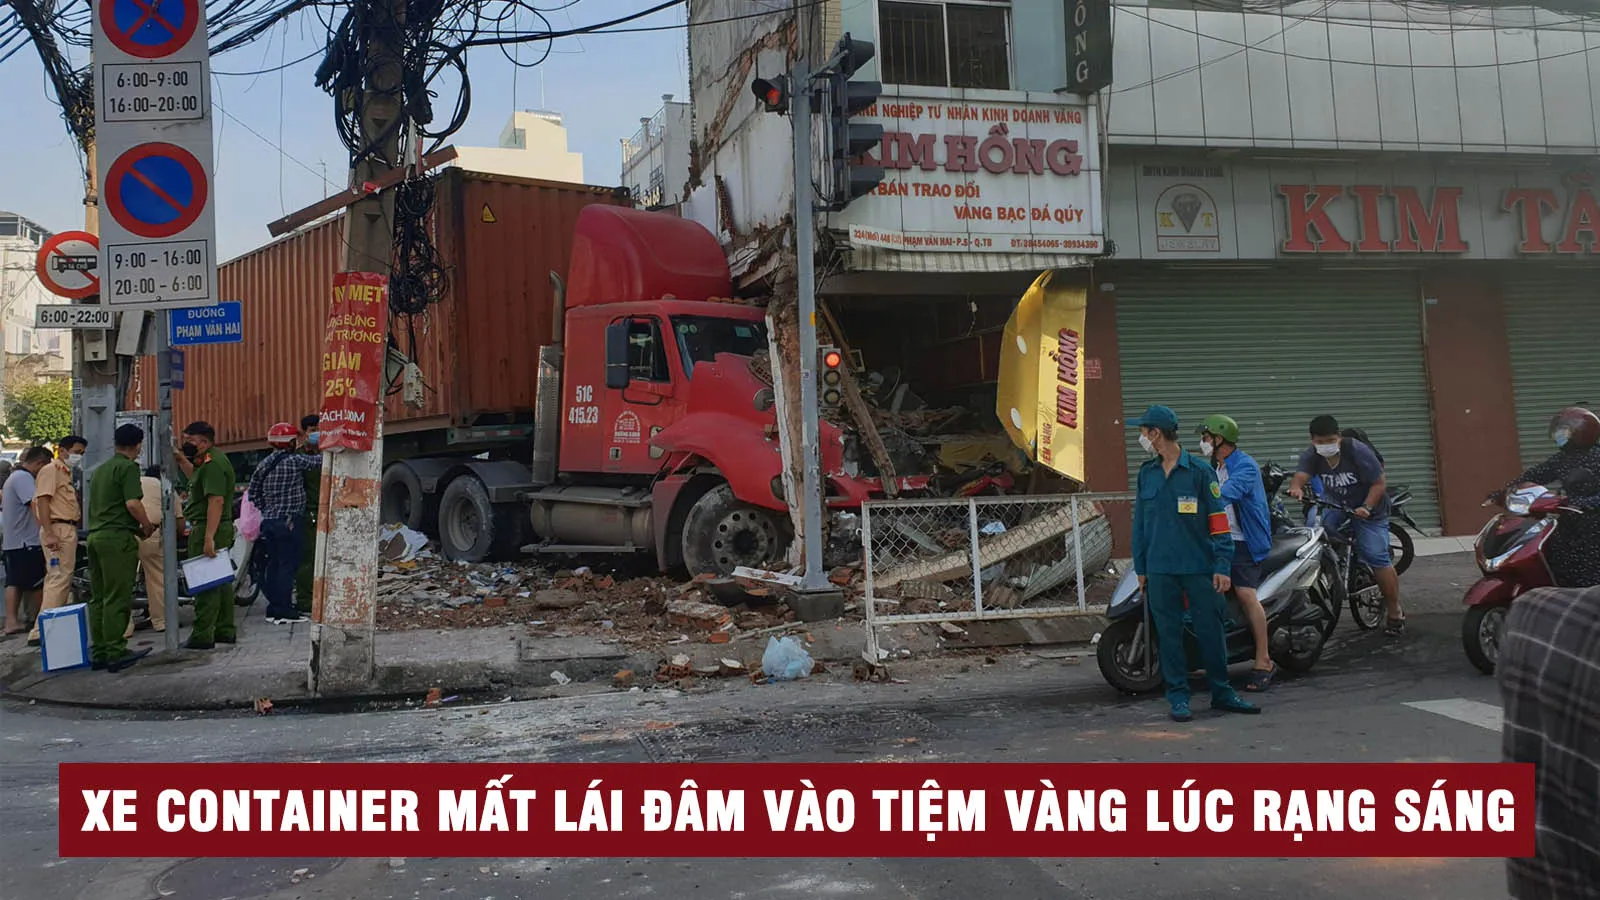 Tin nhanh trưa 23/6: Xe container tông sập tiệm vàng lúc rạng sáng tại TP.HCM